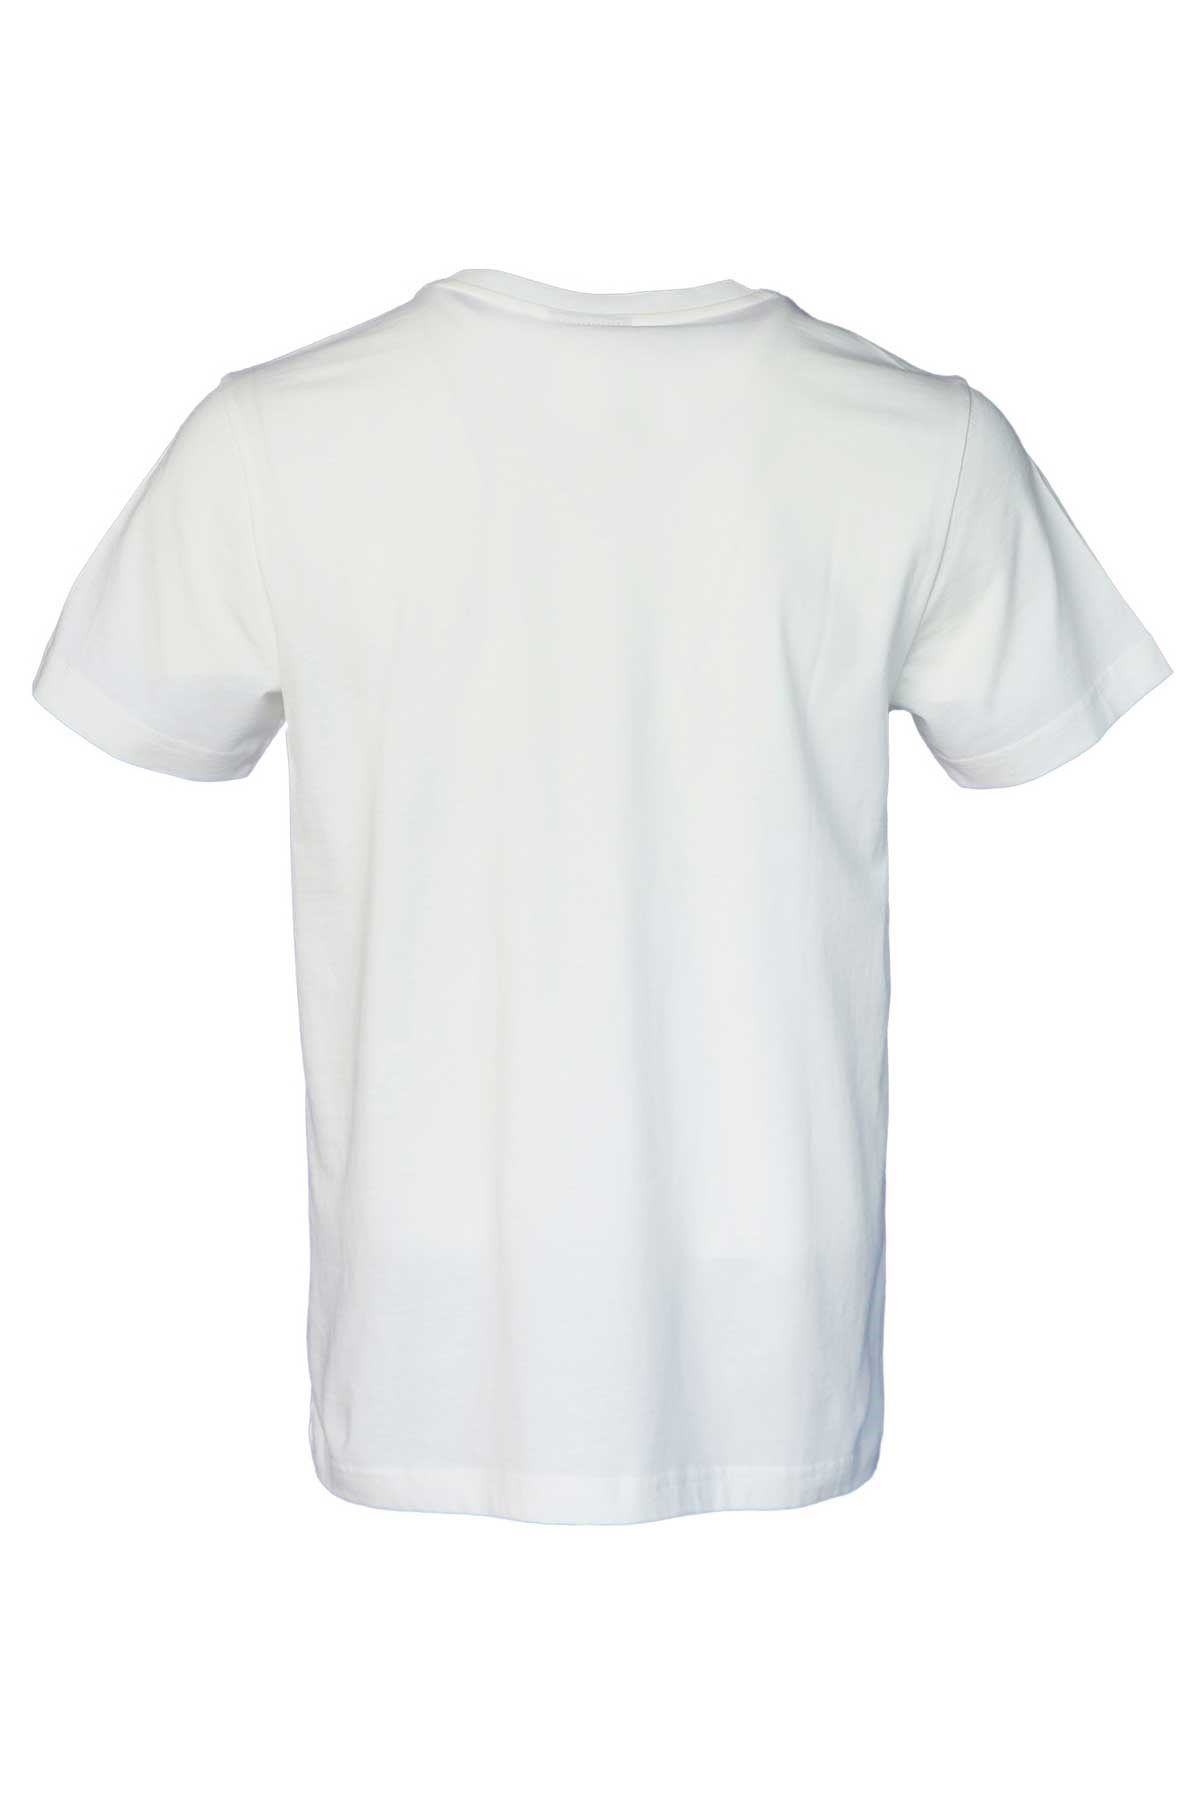 Hummel Hmlleona T-Shırt S/S Erkek Beyaz Tişört - 911667-9003